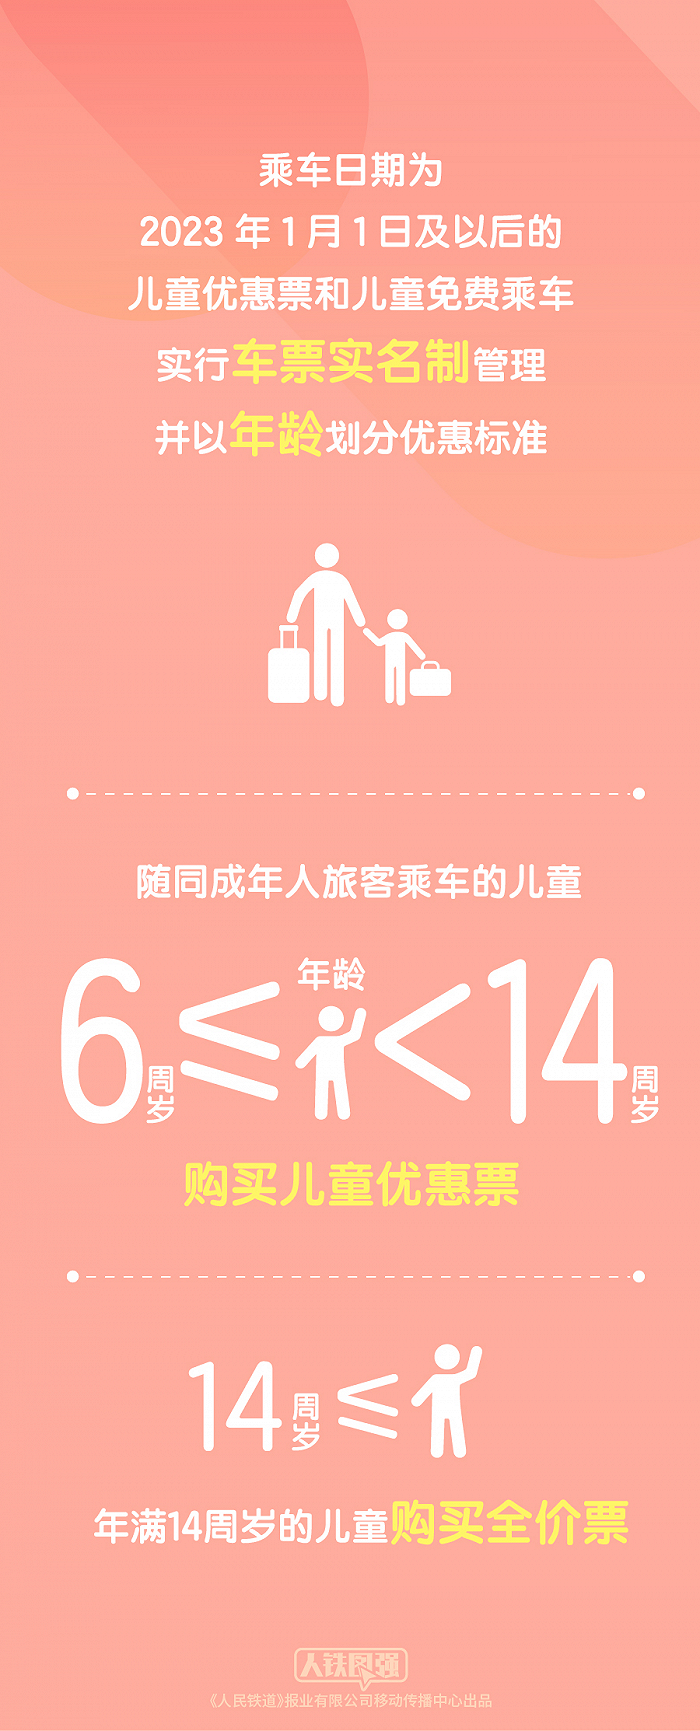 中国铁路：2023年1月1日起 购买儿童票有新变化